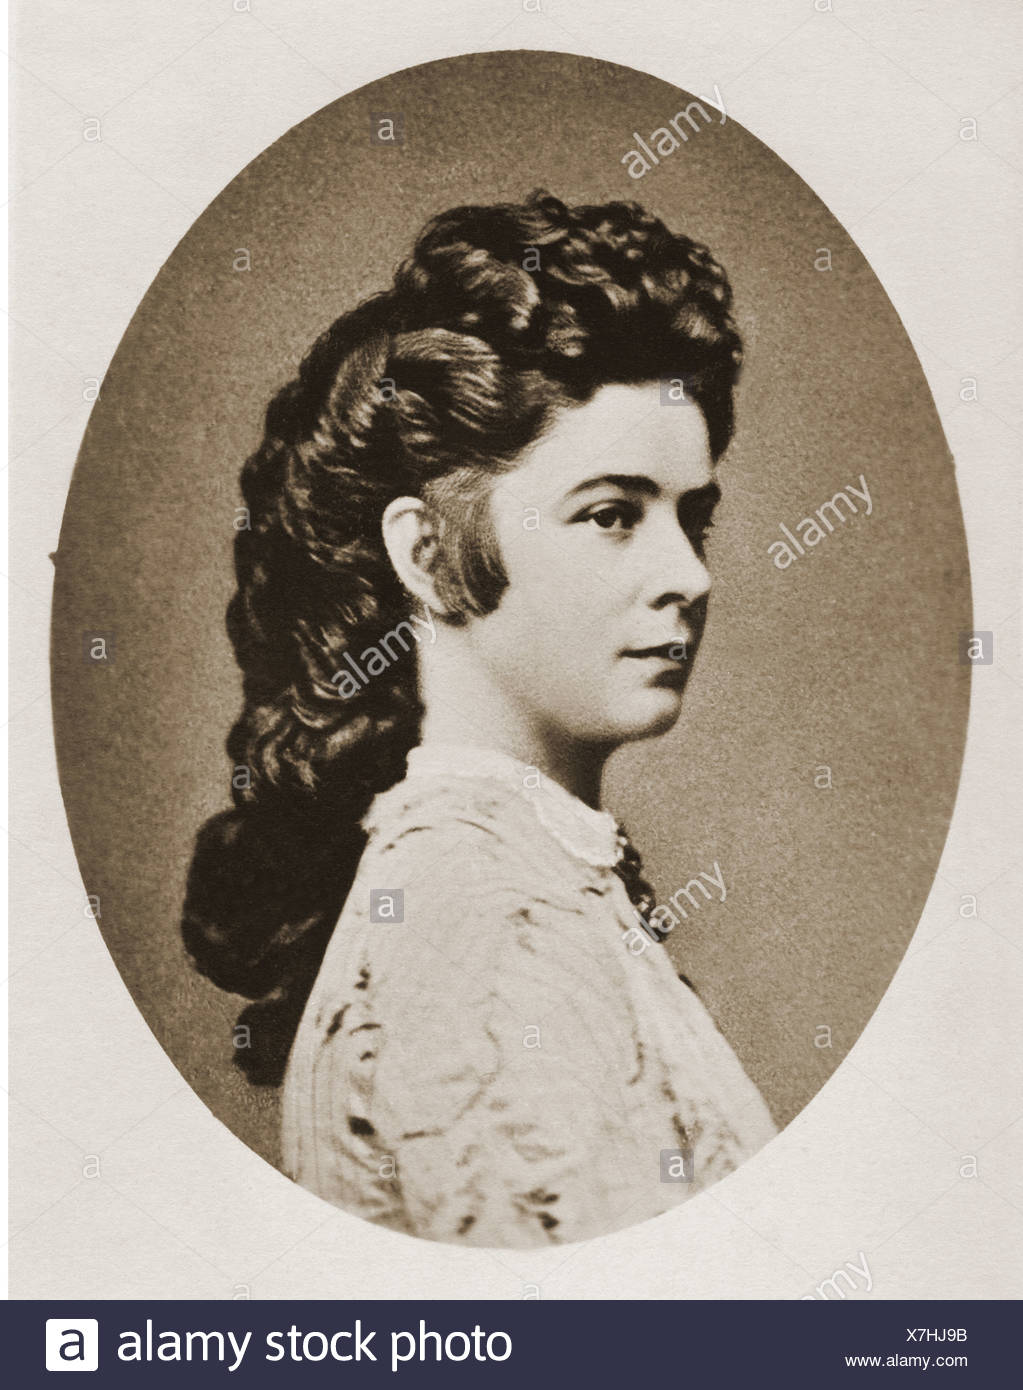 SISSI Y FRANCISCO JOSÉ Elisabeth-amalie-isi-25-12-1837-9-9-1898-emperatriz-de-austria-24-4-1854-9-9-1898-retrato-despues-de-la-fotografia-de-ludwig-angerer-viena-1864-casa-de-wittelsbach-princesa-de-baviera-archiduquesa-reina-de-hungria-monarquia-dual-austria-hungria-habsburg-lorena-habsburgo-lorena-siglo-xix-mujer-mujer-mujer-pueblo-x7hj9b